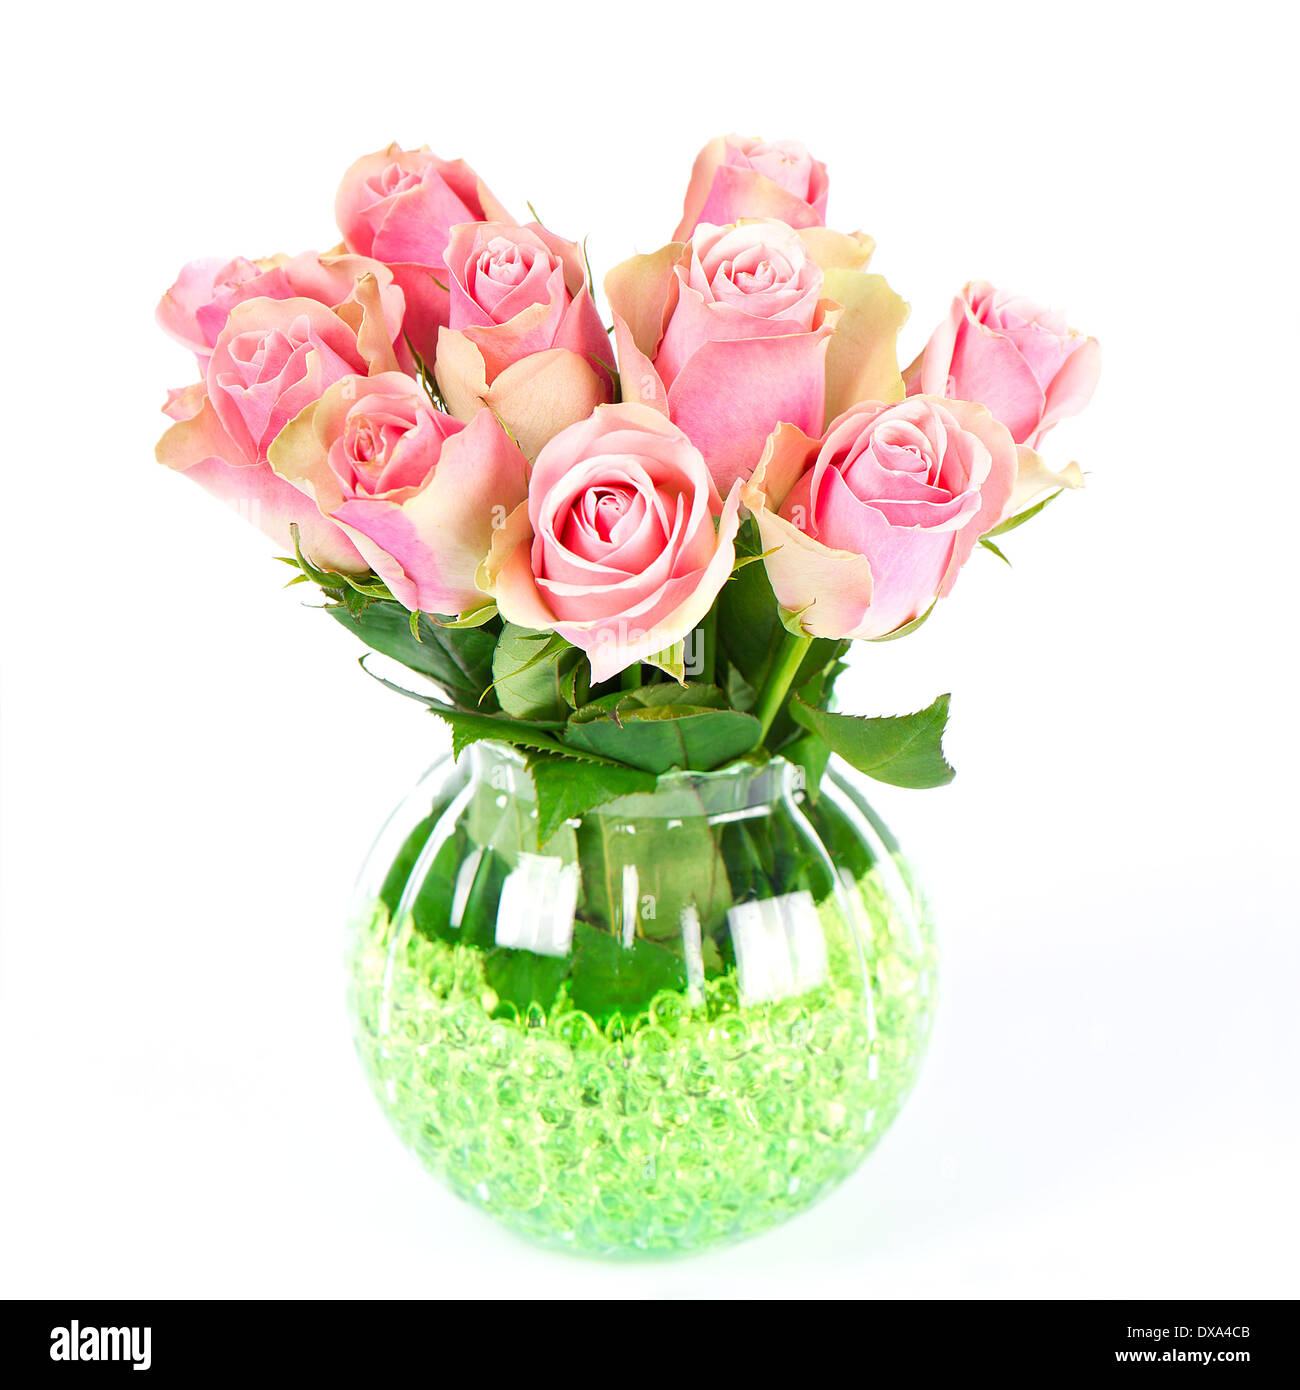 Beau bouquet roses roses sur fond blanc Banque D'Images